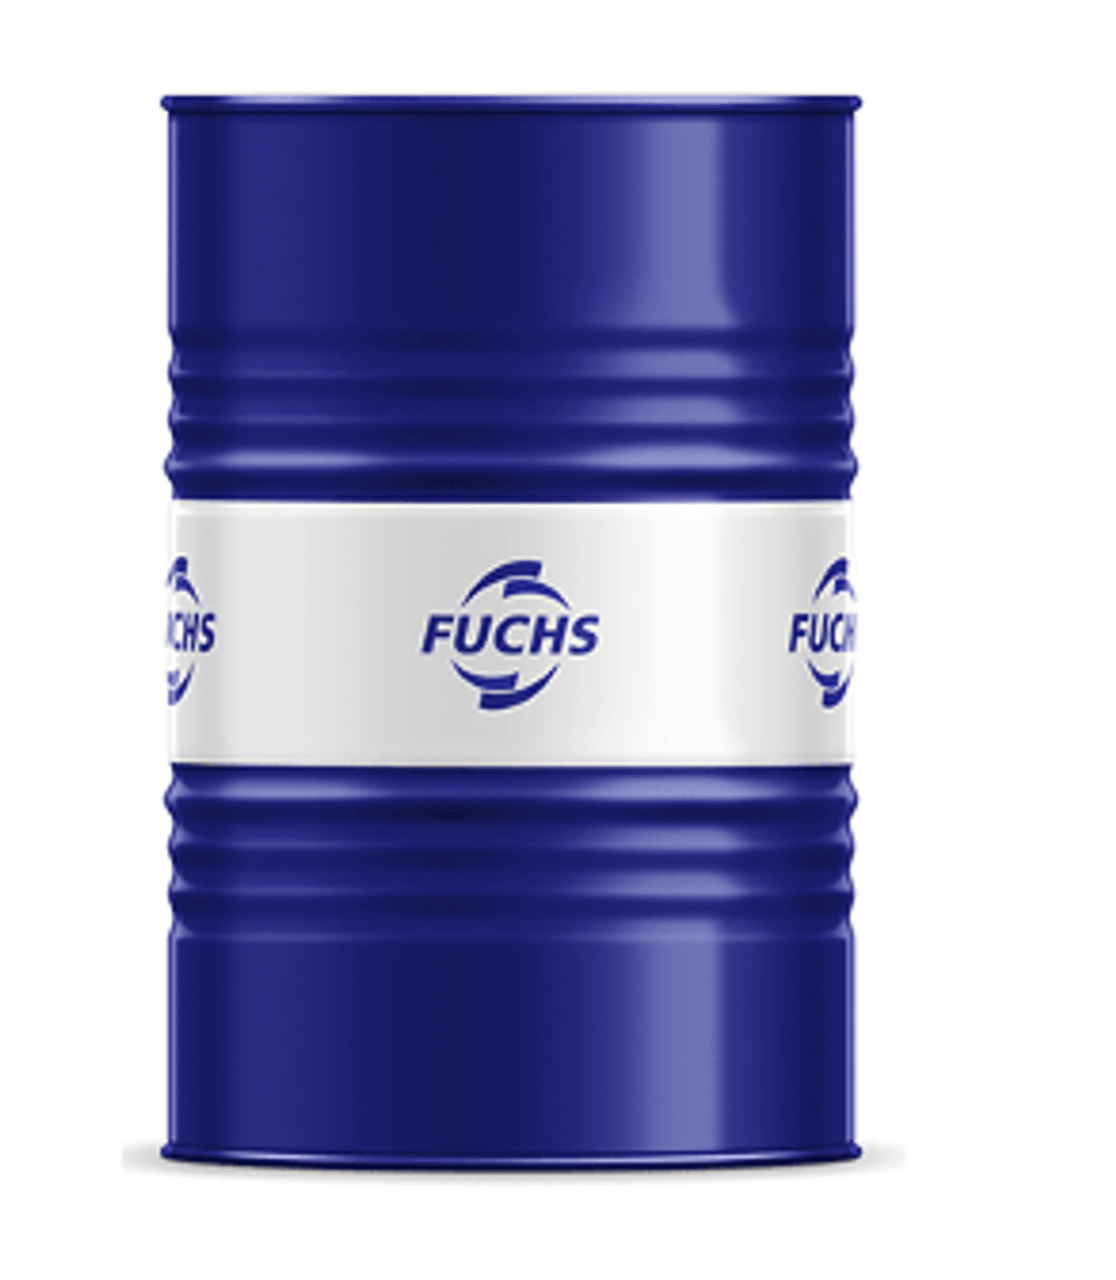 Fuchs Stabylan Barrier Fluid 5 - 55 Gal drum